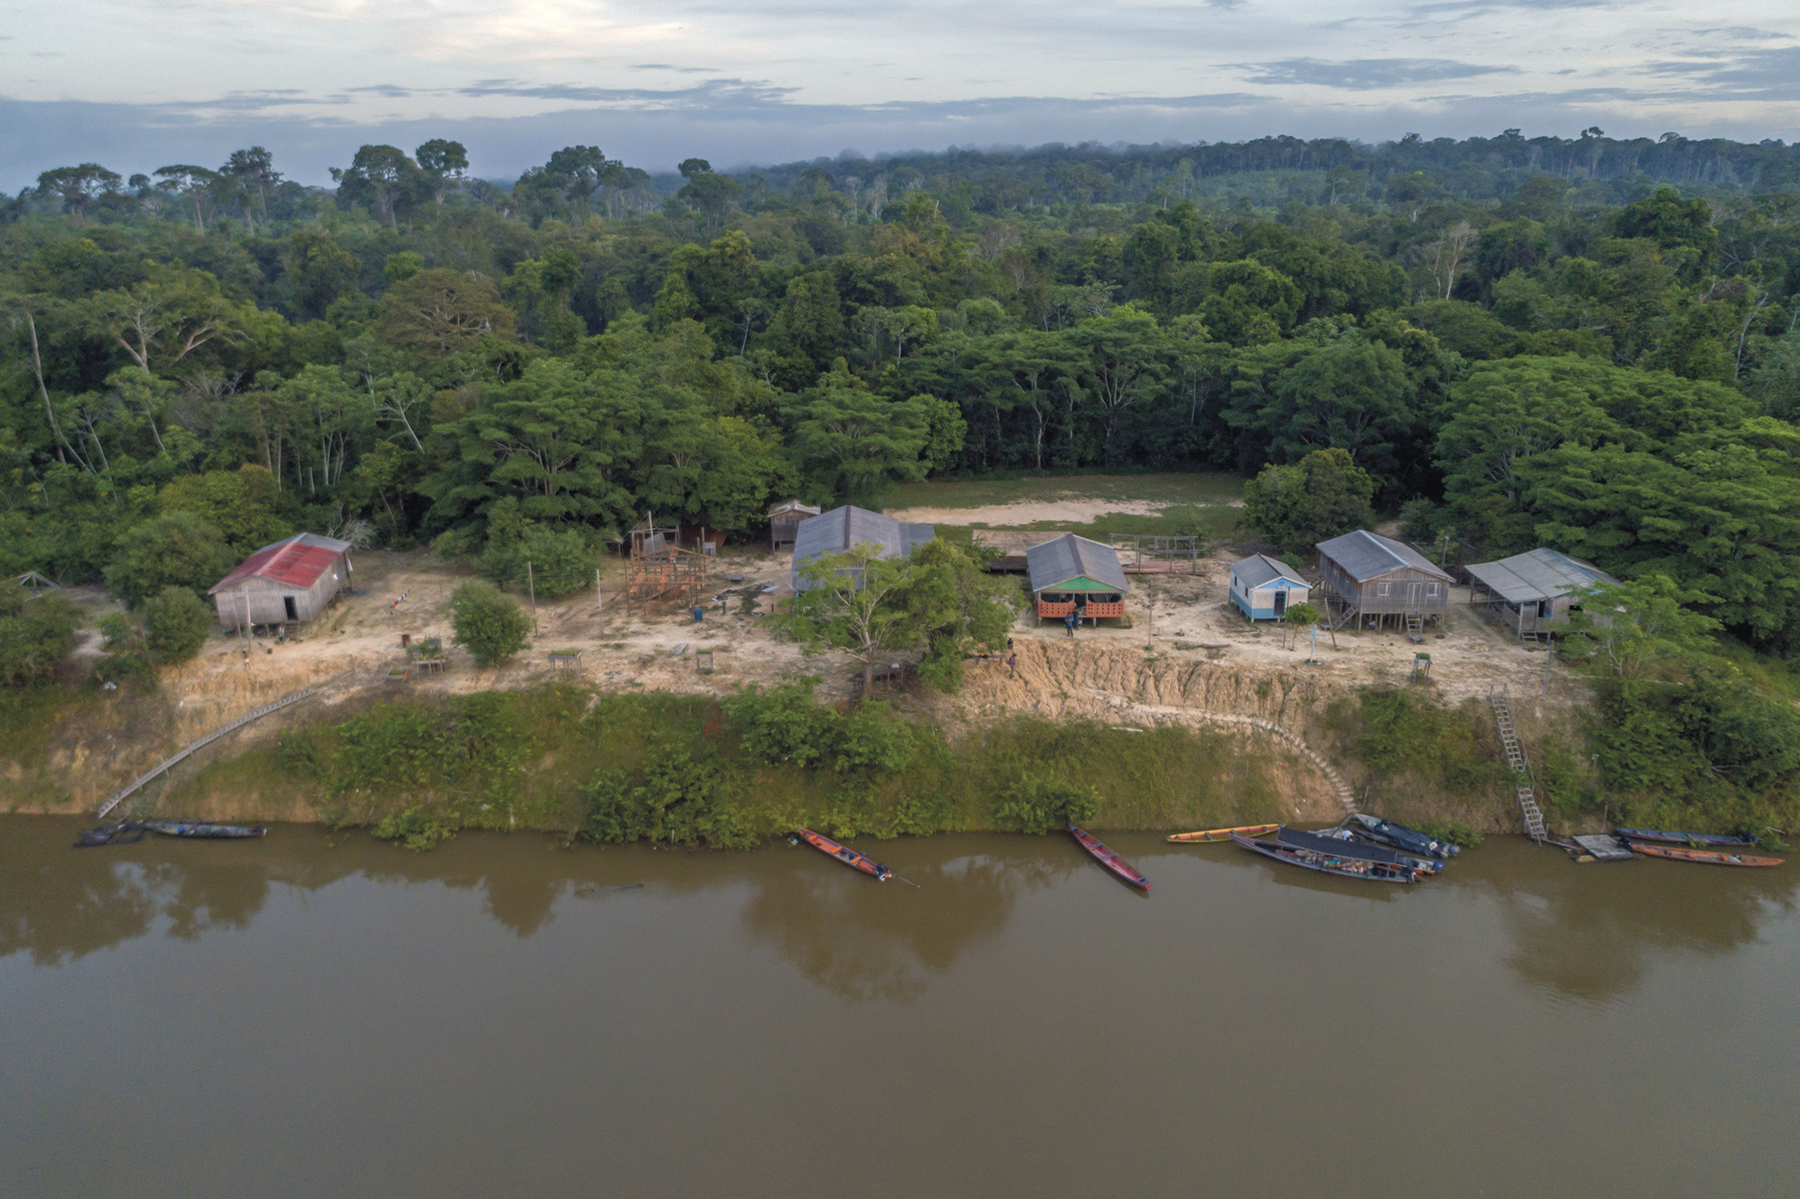 Fotografia. Vista de cima. Uma comunidade na margem de um rio. Há casas espalhadas em áreas desmatadas e ao fundo, floresta.